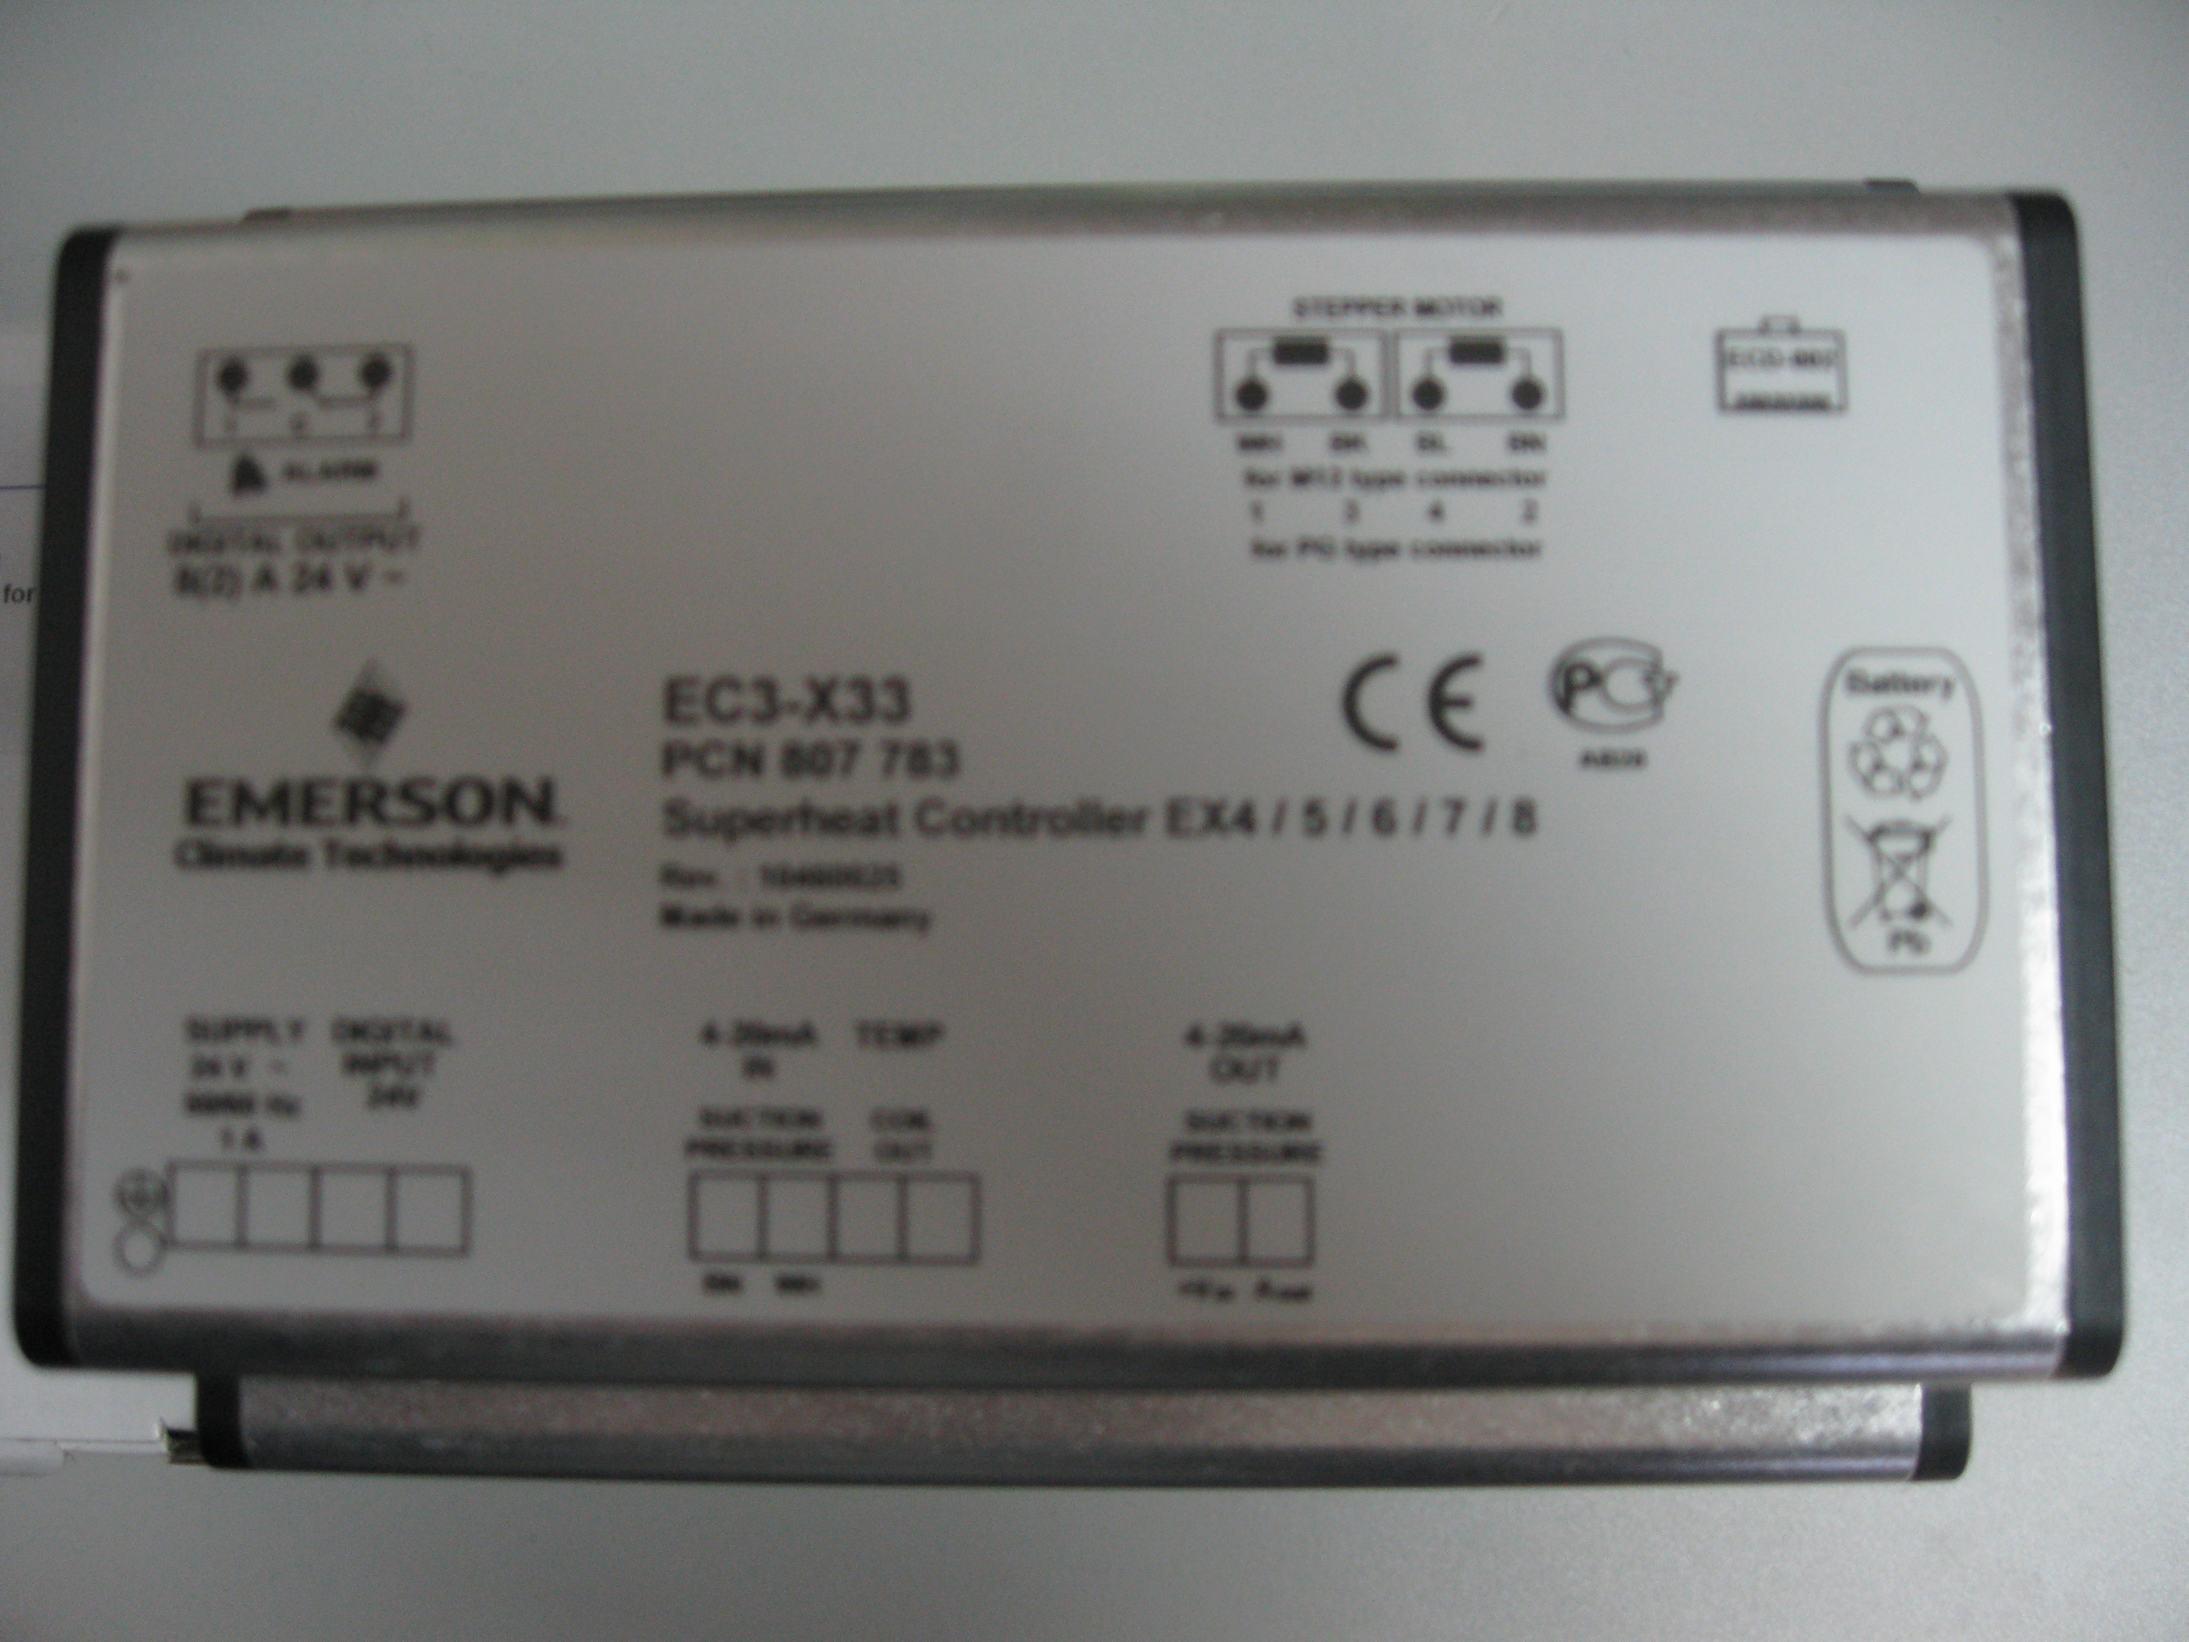 艾默生电子膨胀阀控制器EC3-X33/EXD-U00系列驱动控制器